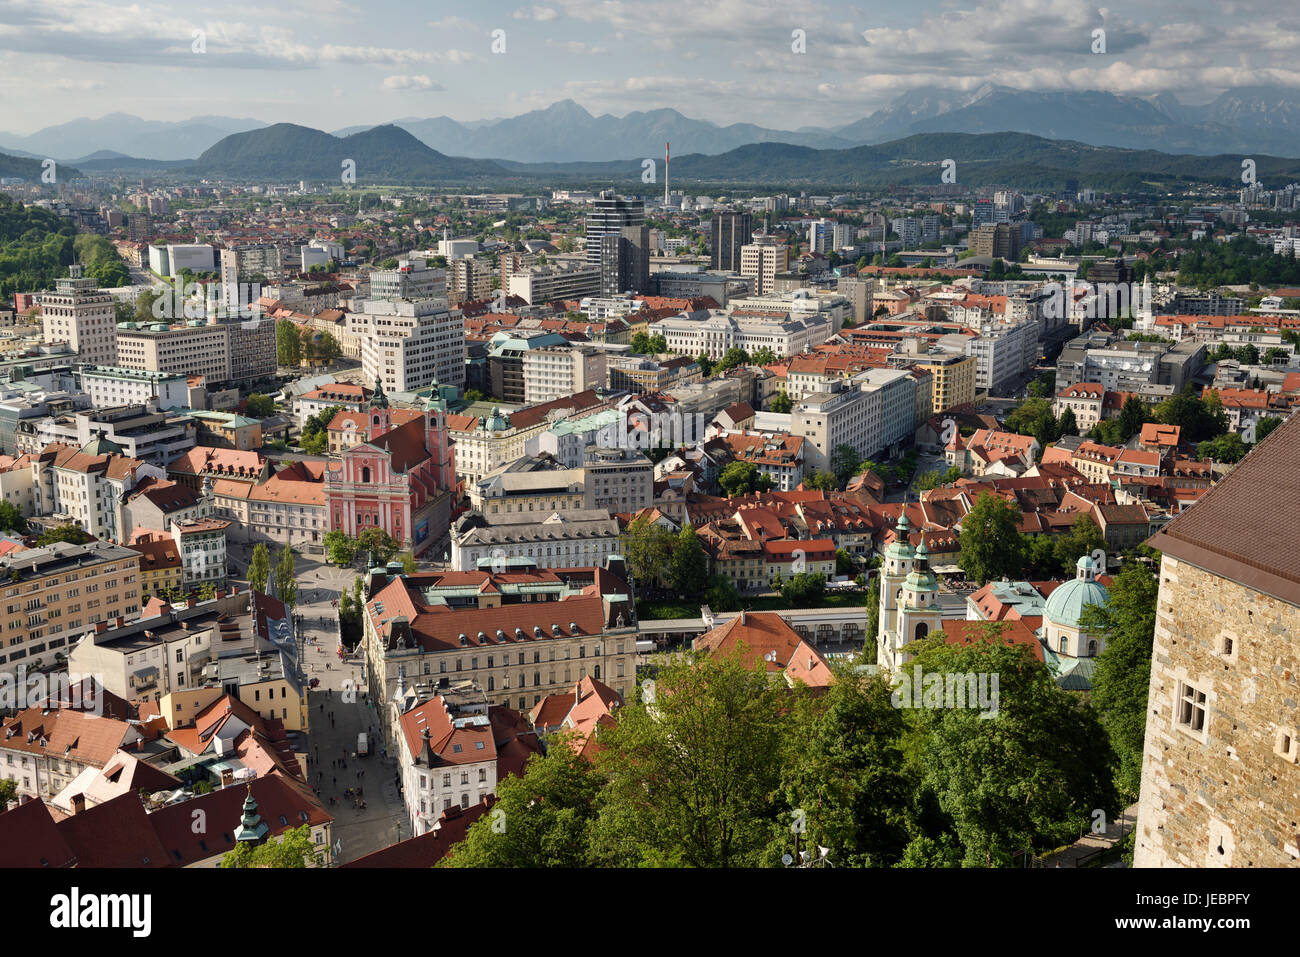 Alten Ljubljana Hauptstadt Sloweniens mit der Karawanken, Mount Saint Mary und Kamnik Savinja Kalkalpen vom Hügel die Burg von Ljubljana Stockfoto